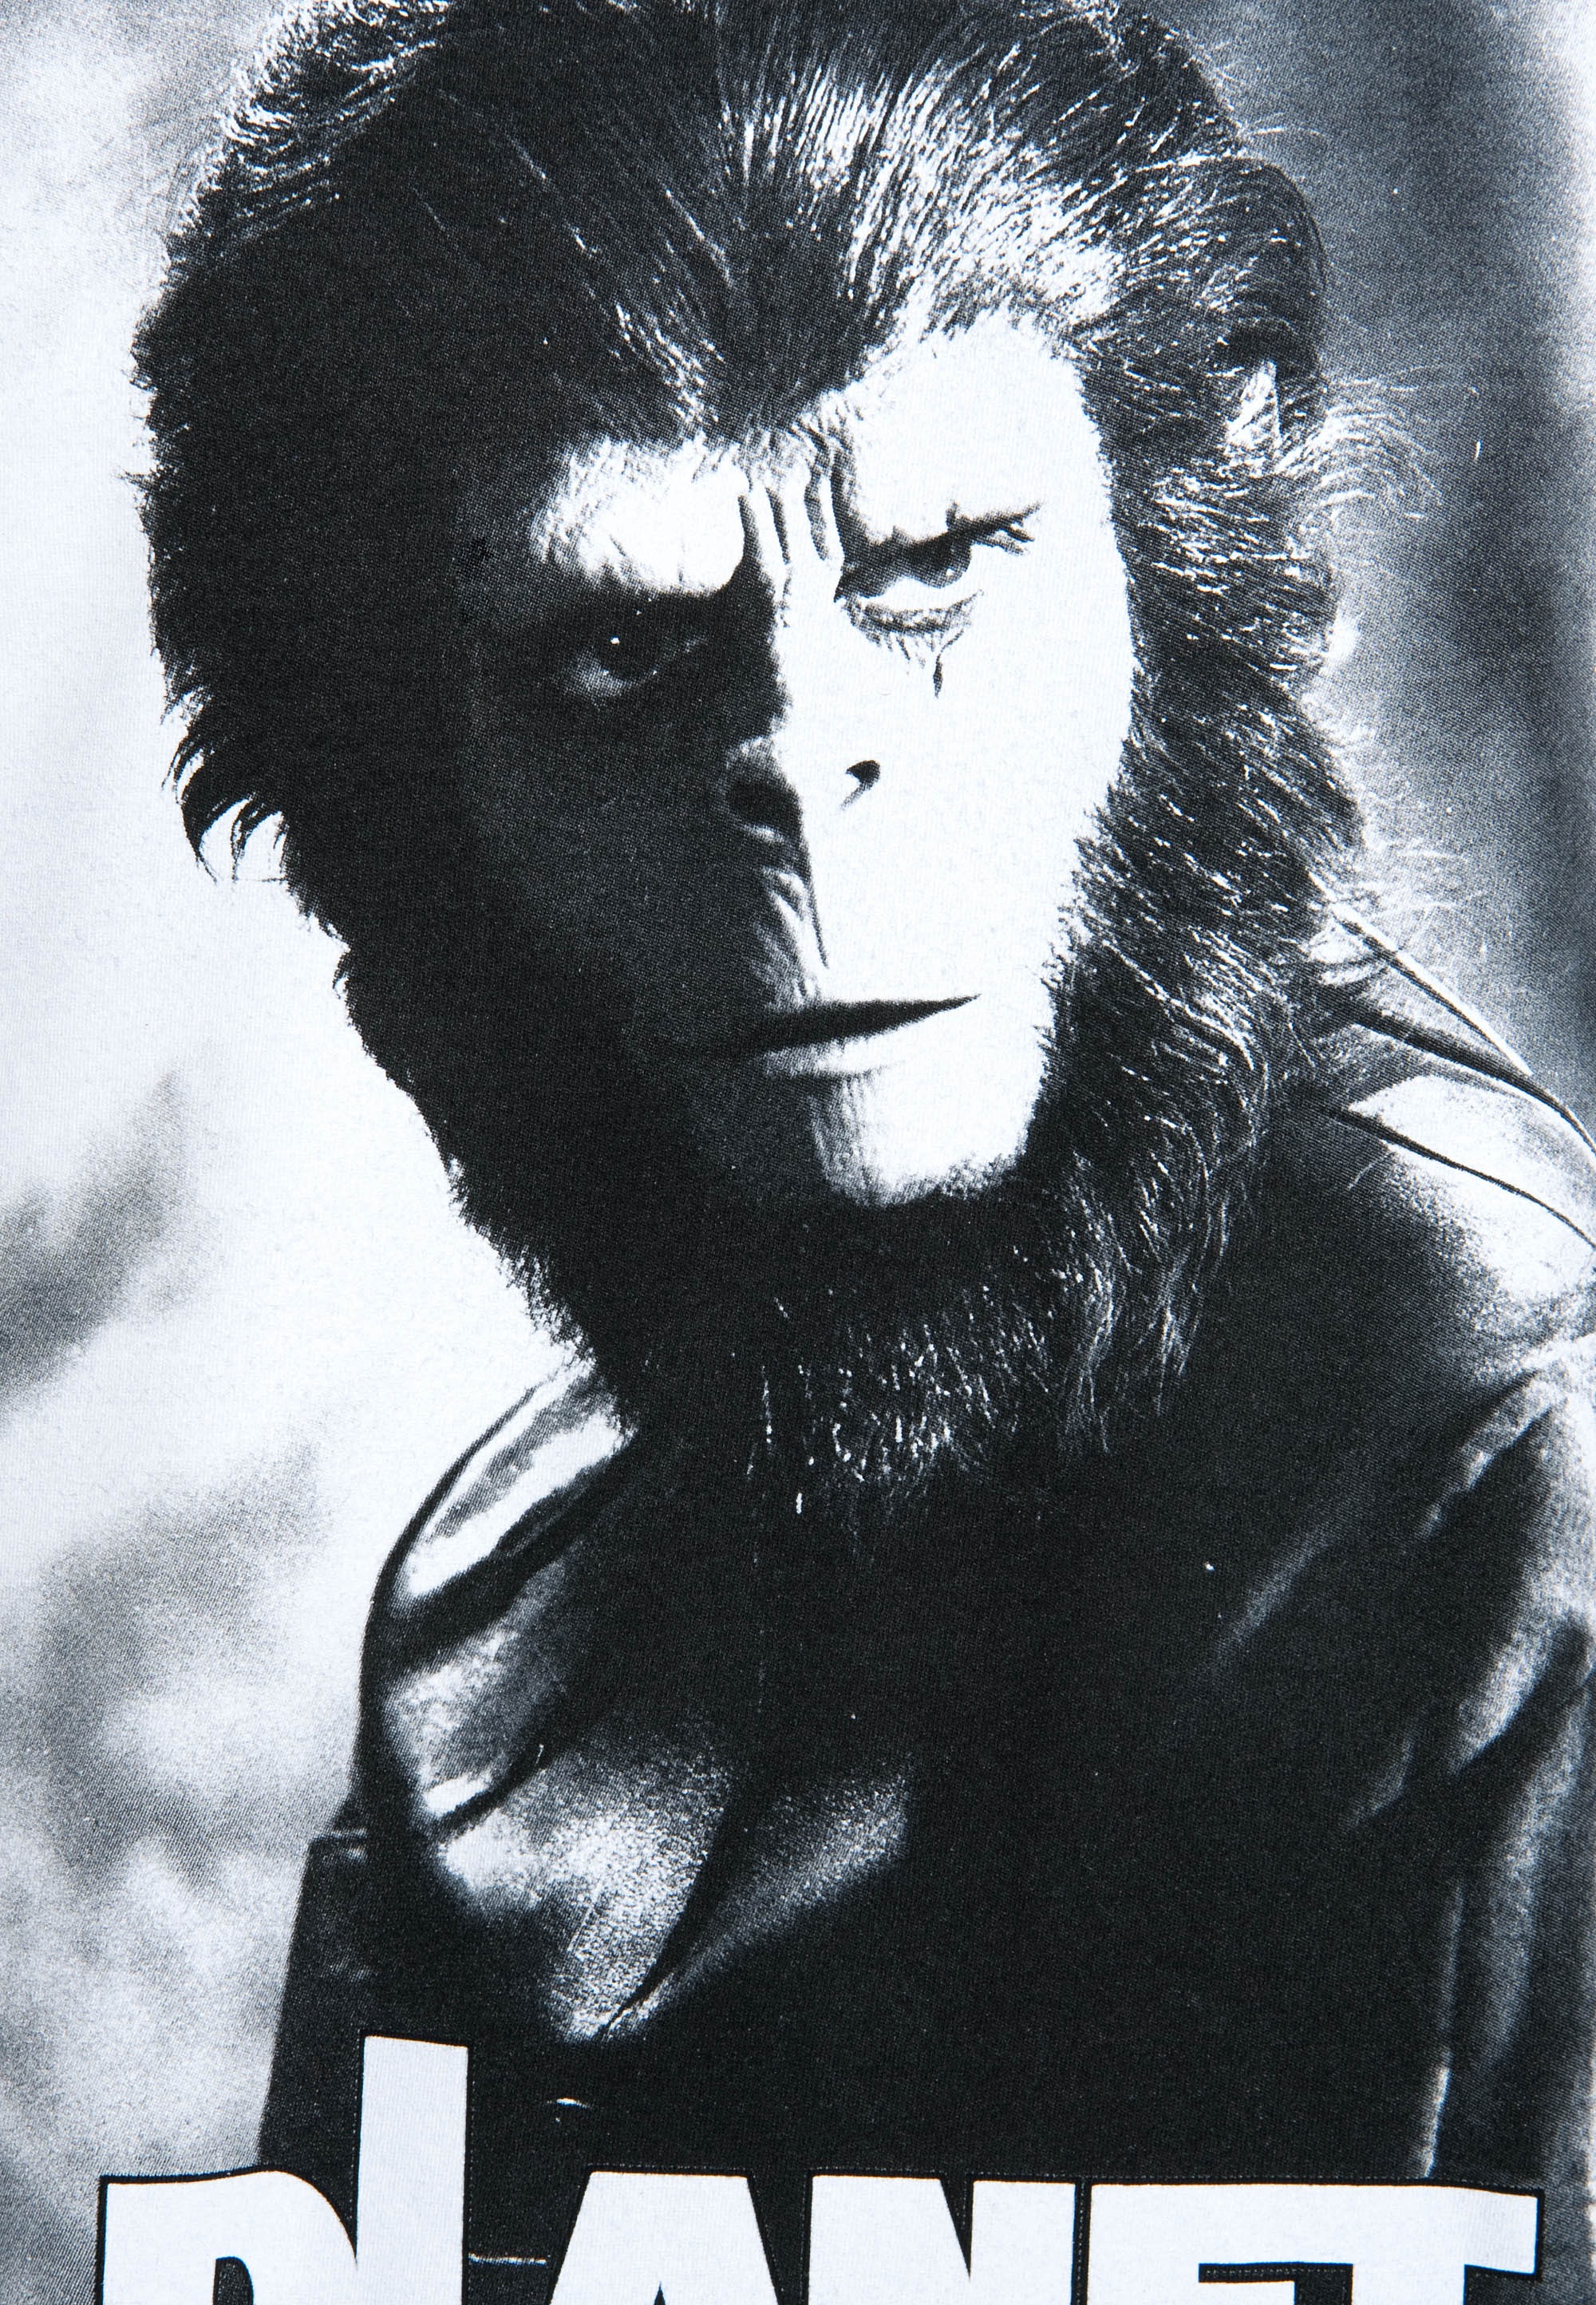 LOGOSHIRT T-Shirt »Planet der Affen«, mit großem Frontprint